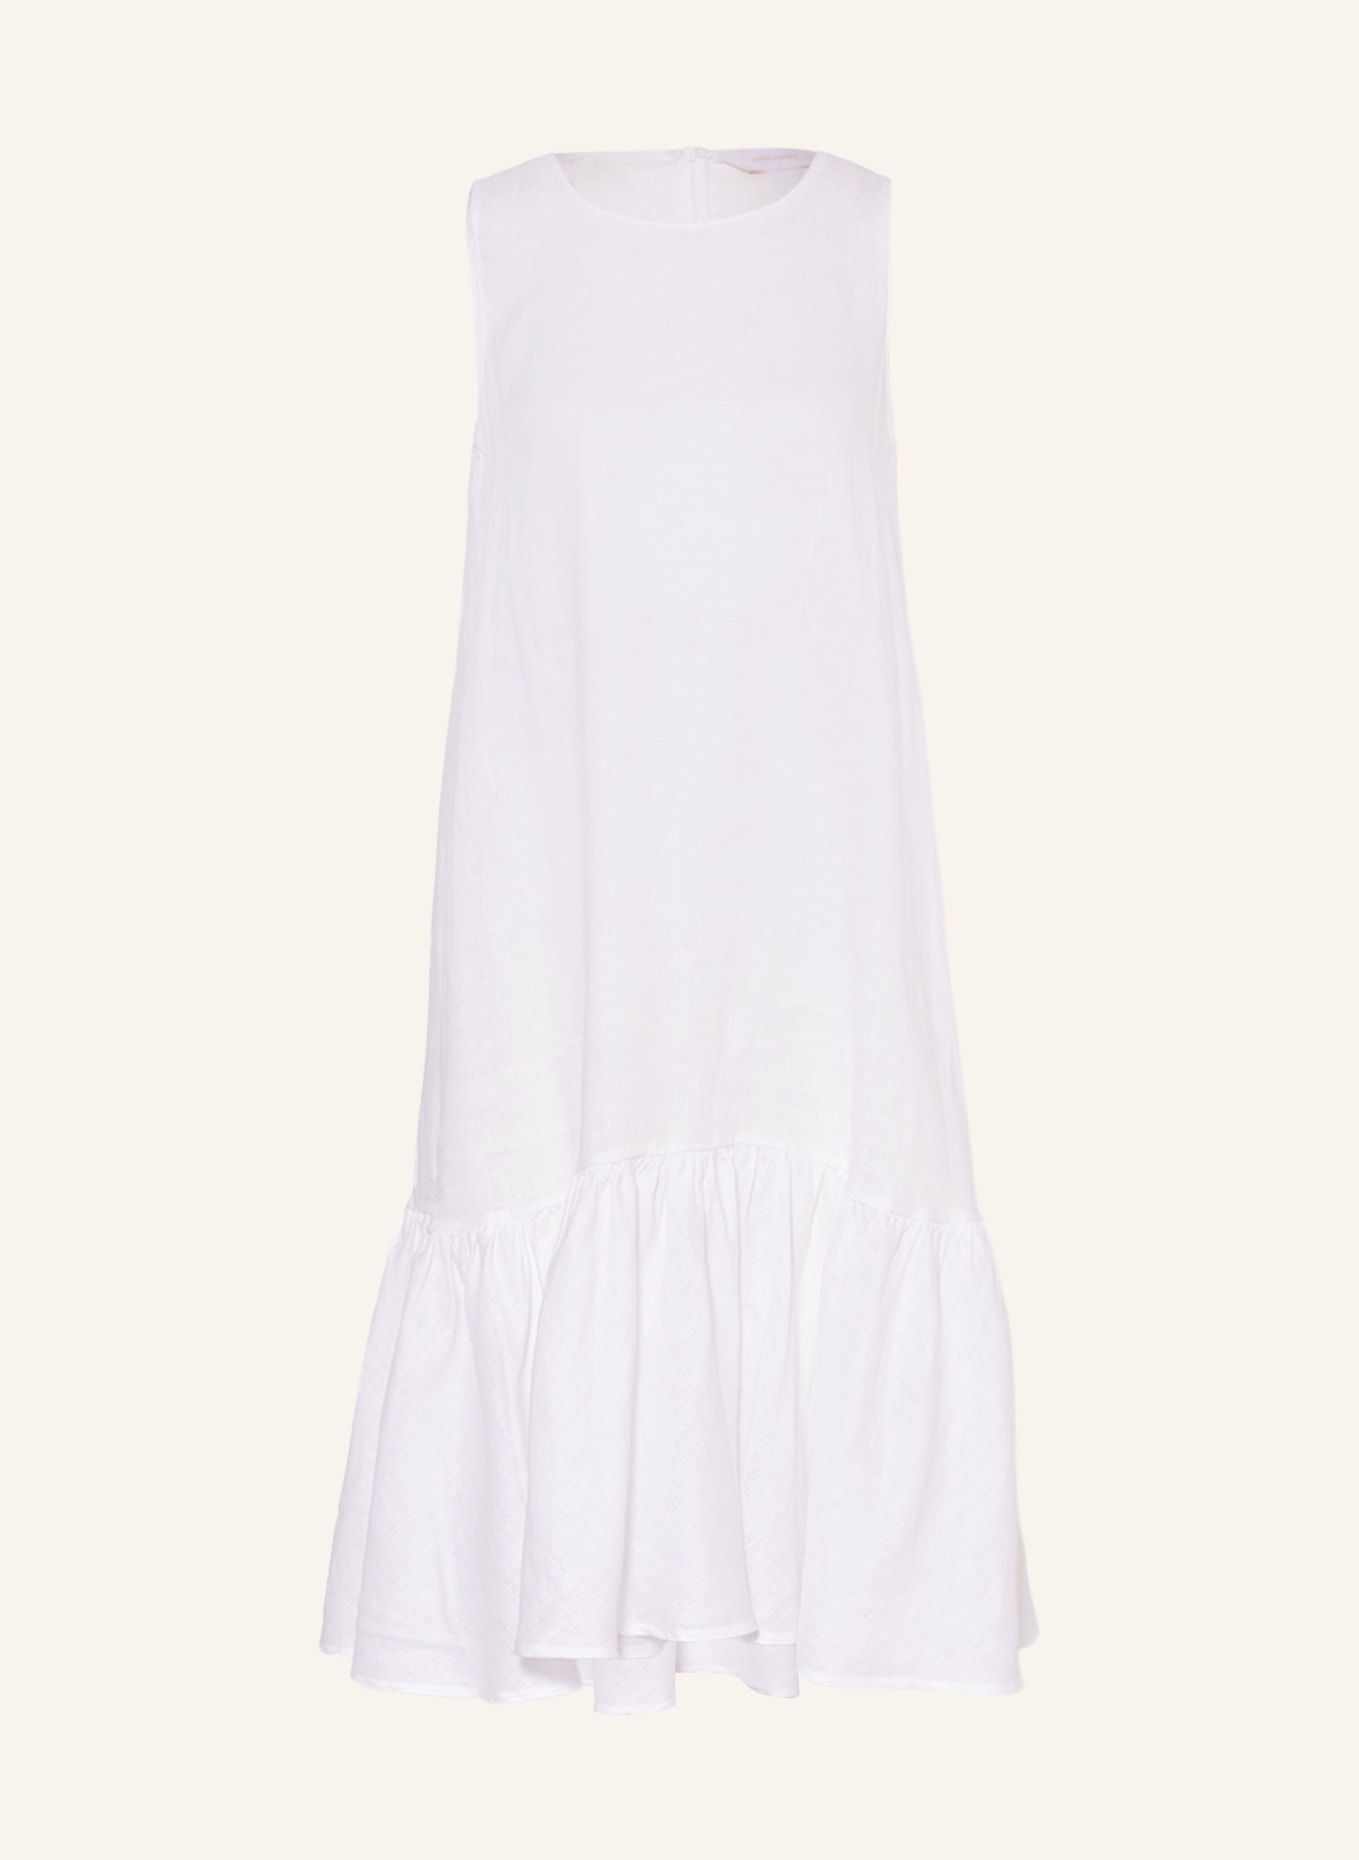 ROBERT FRIEDMAN Linen dress KARENL, Color: WHITE (Image 1)